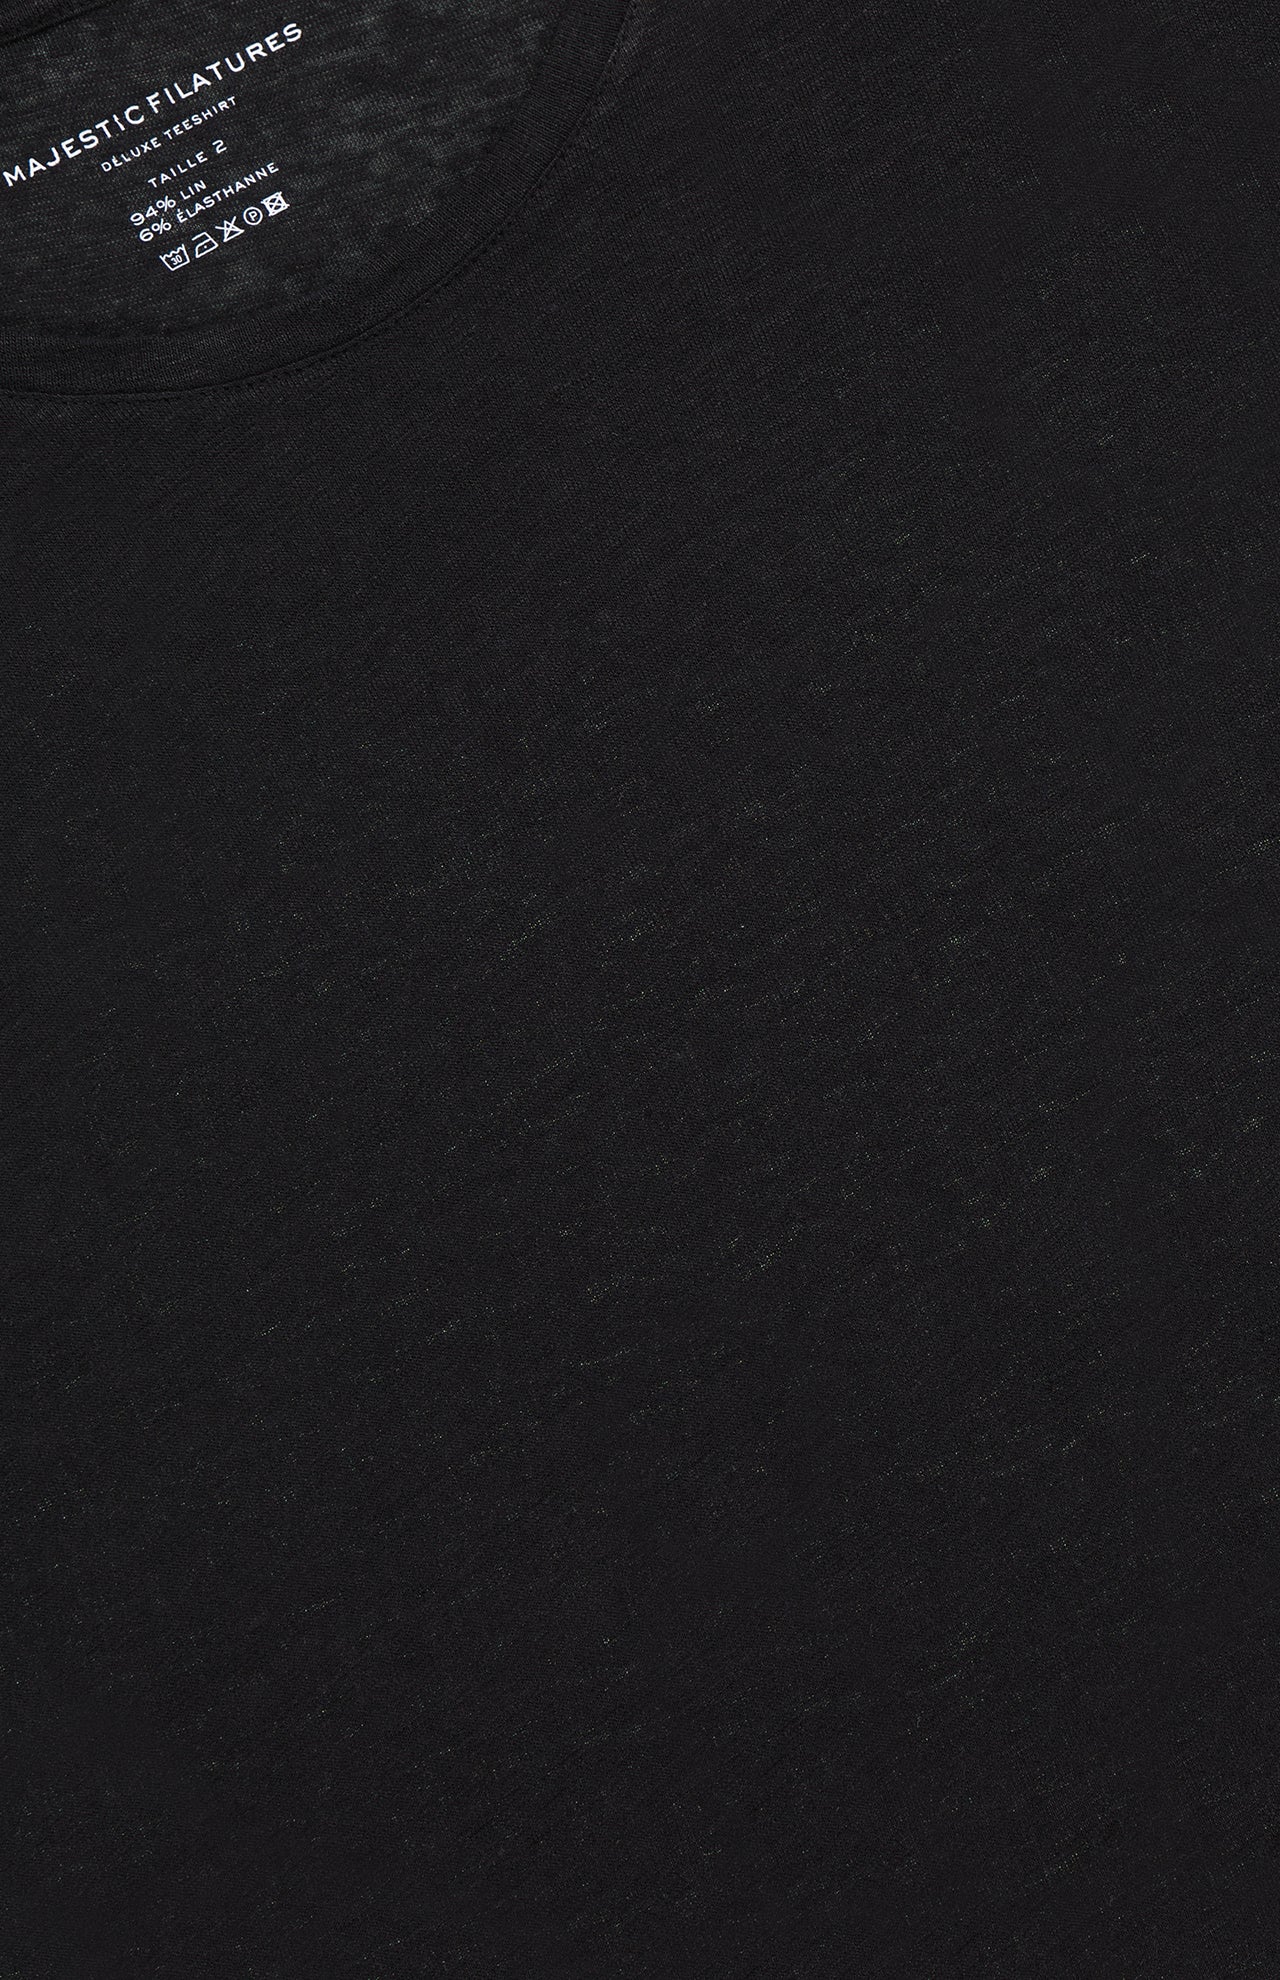 Stretch Linen Short Sleeve Crewneck T-Shirt (7200336183411)